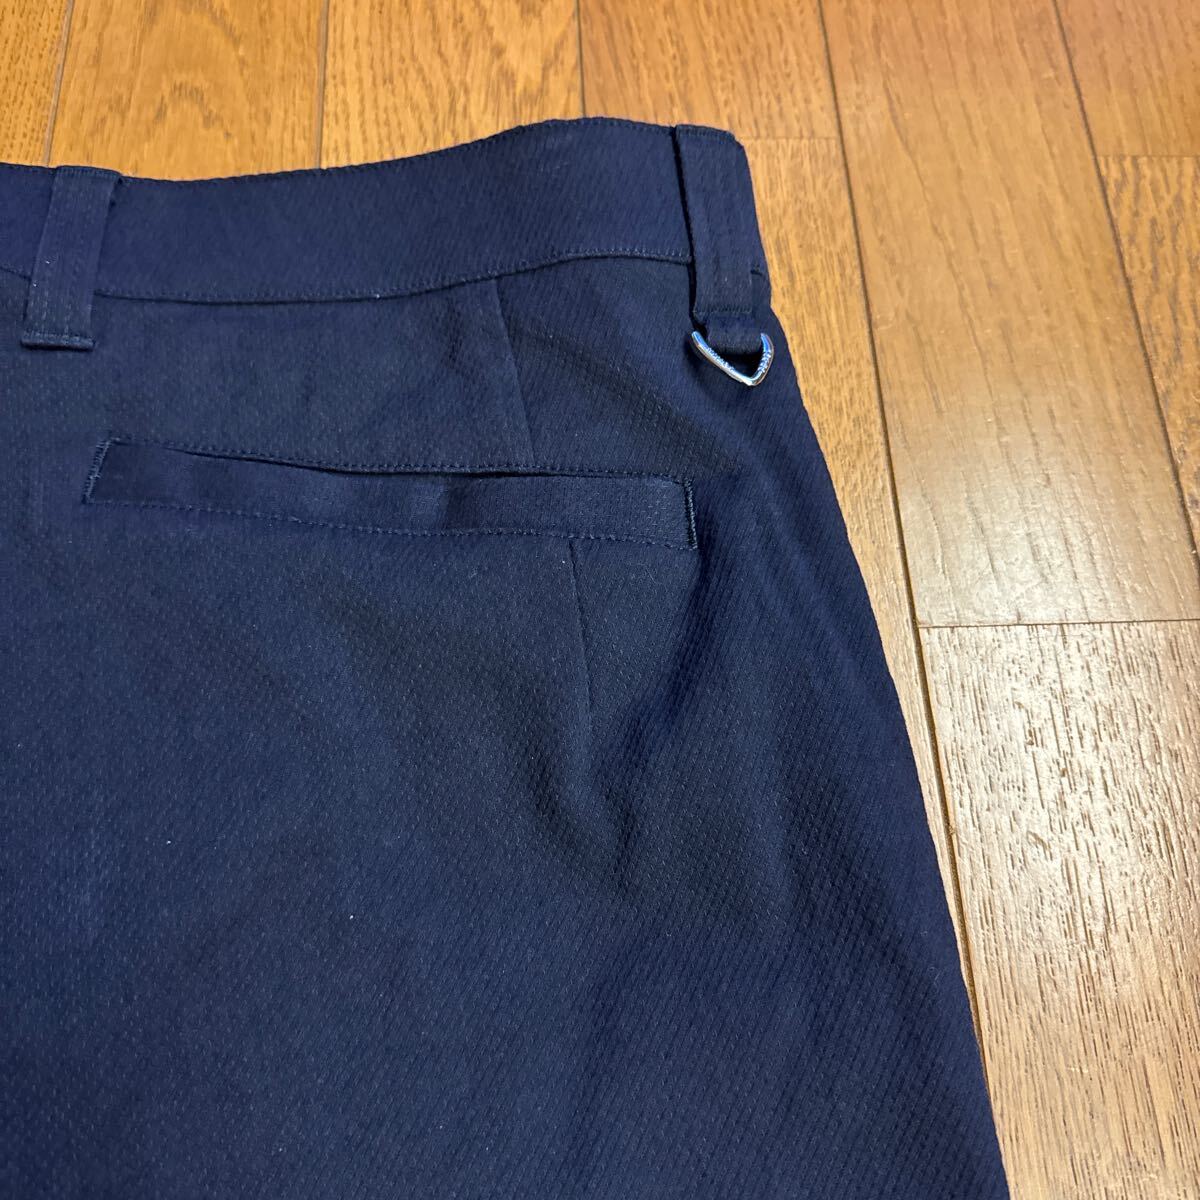 23 район GOLF! 7 часть длина брюки!LL(86cm~)! темно-синий! довольно большой. мужчина предназначенный!100 иен старт!